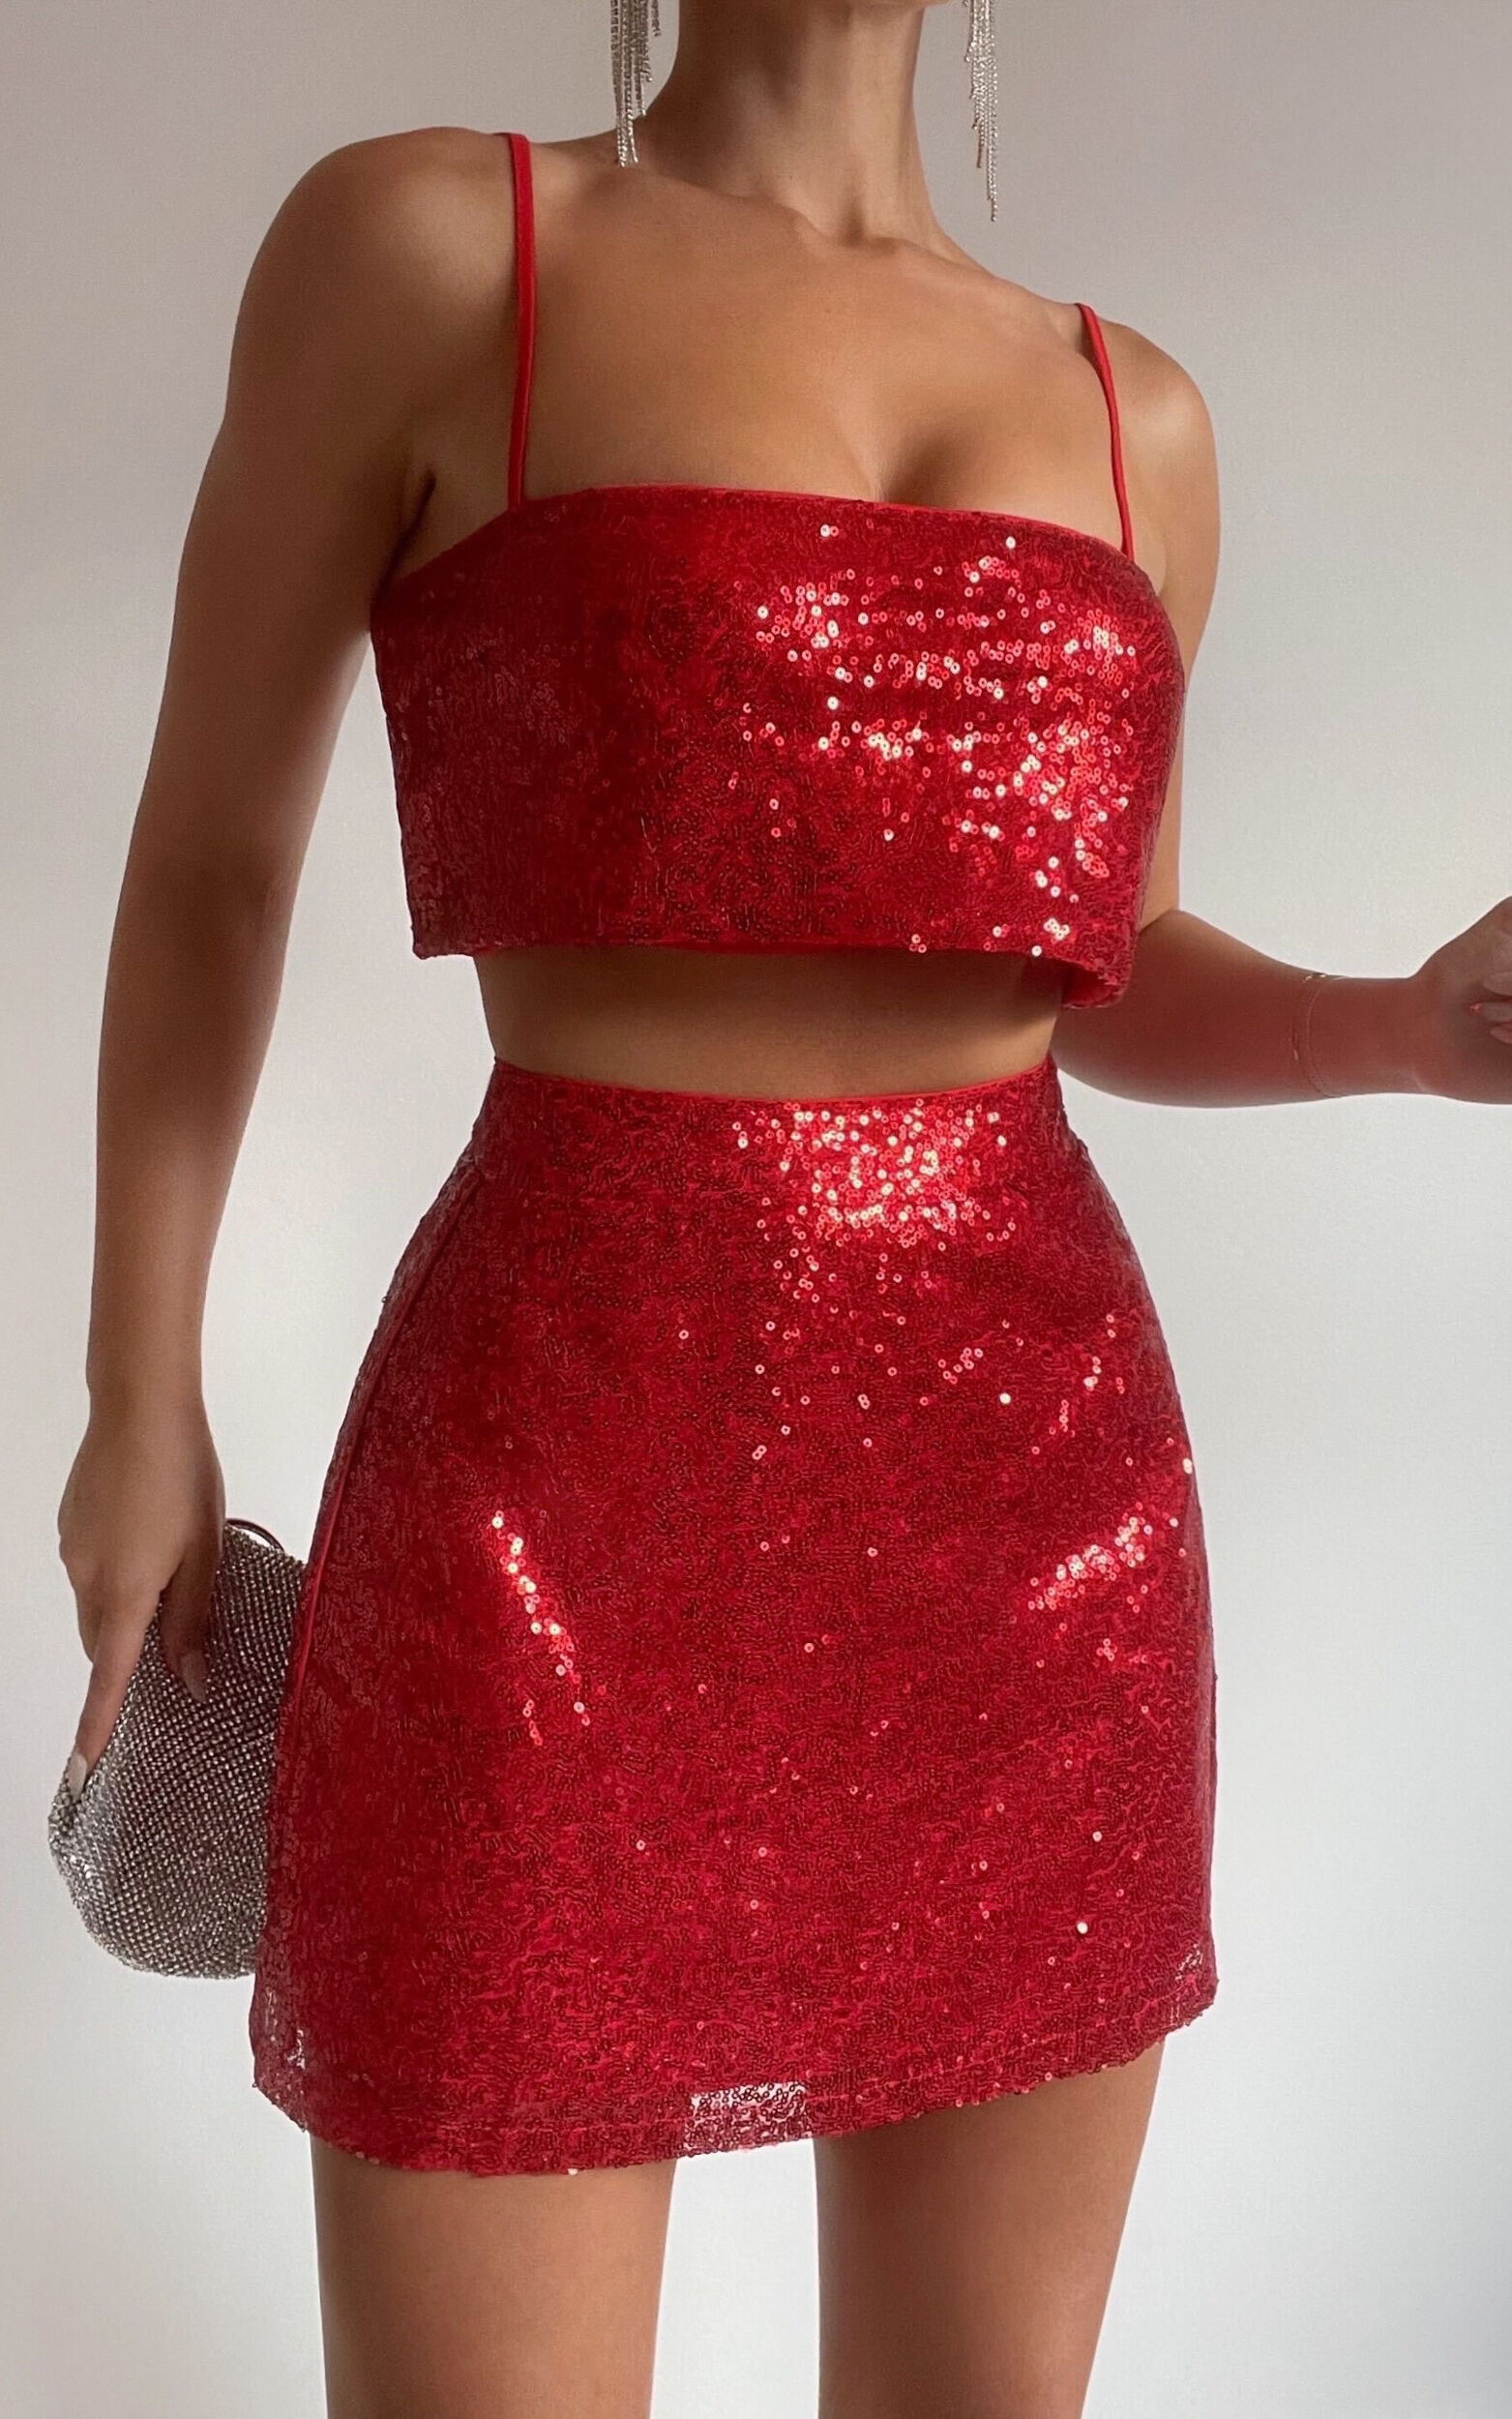 Elswyth Mini Skirt - Side Split Sequin Skirt in Red - 06, RED1